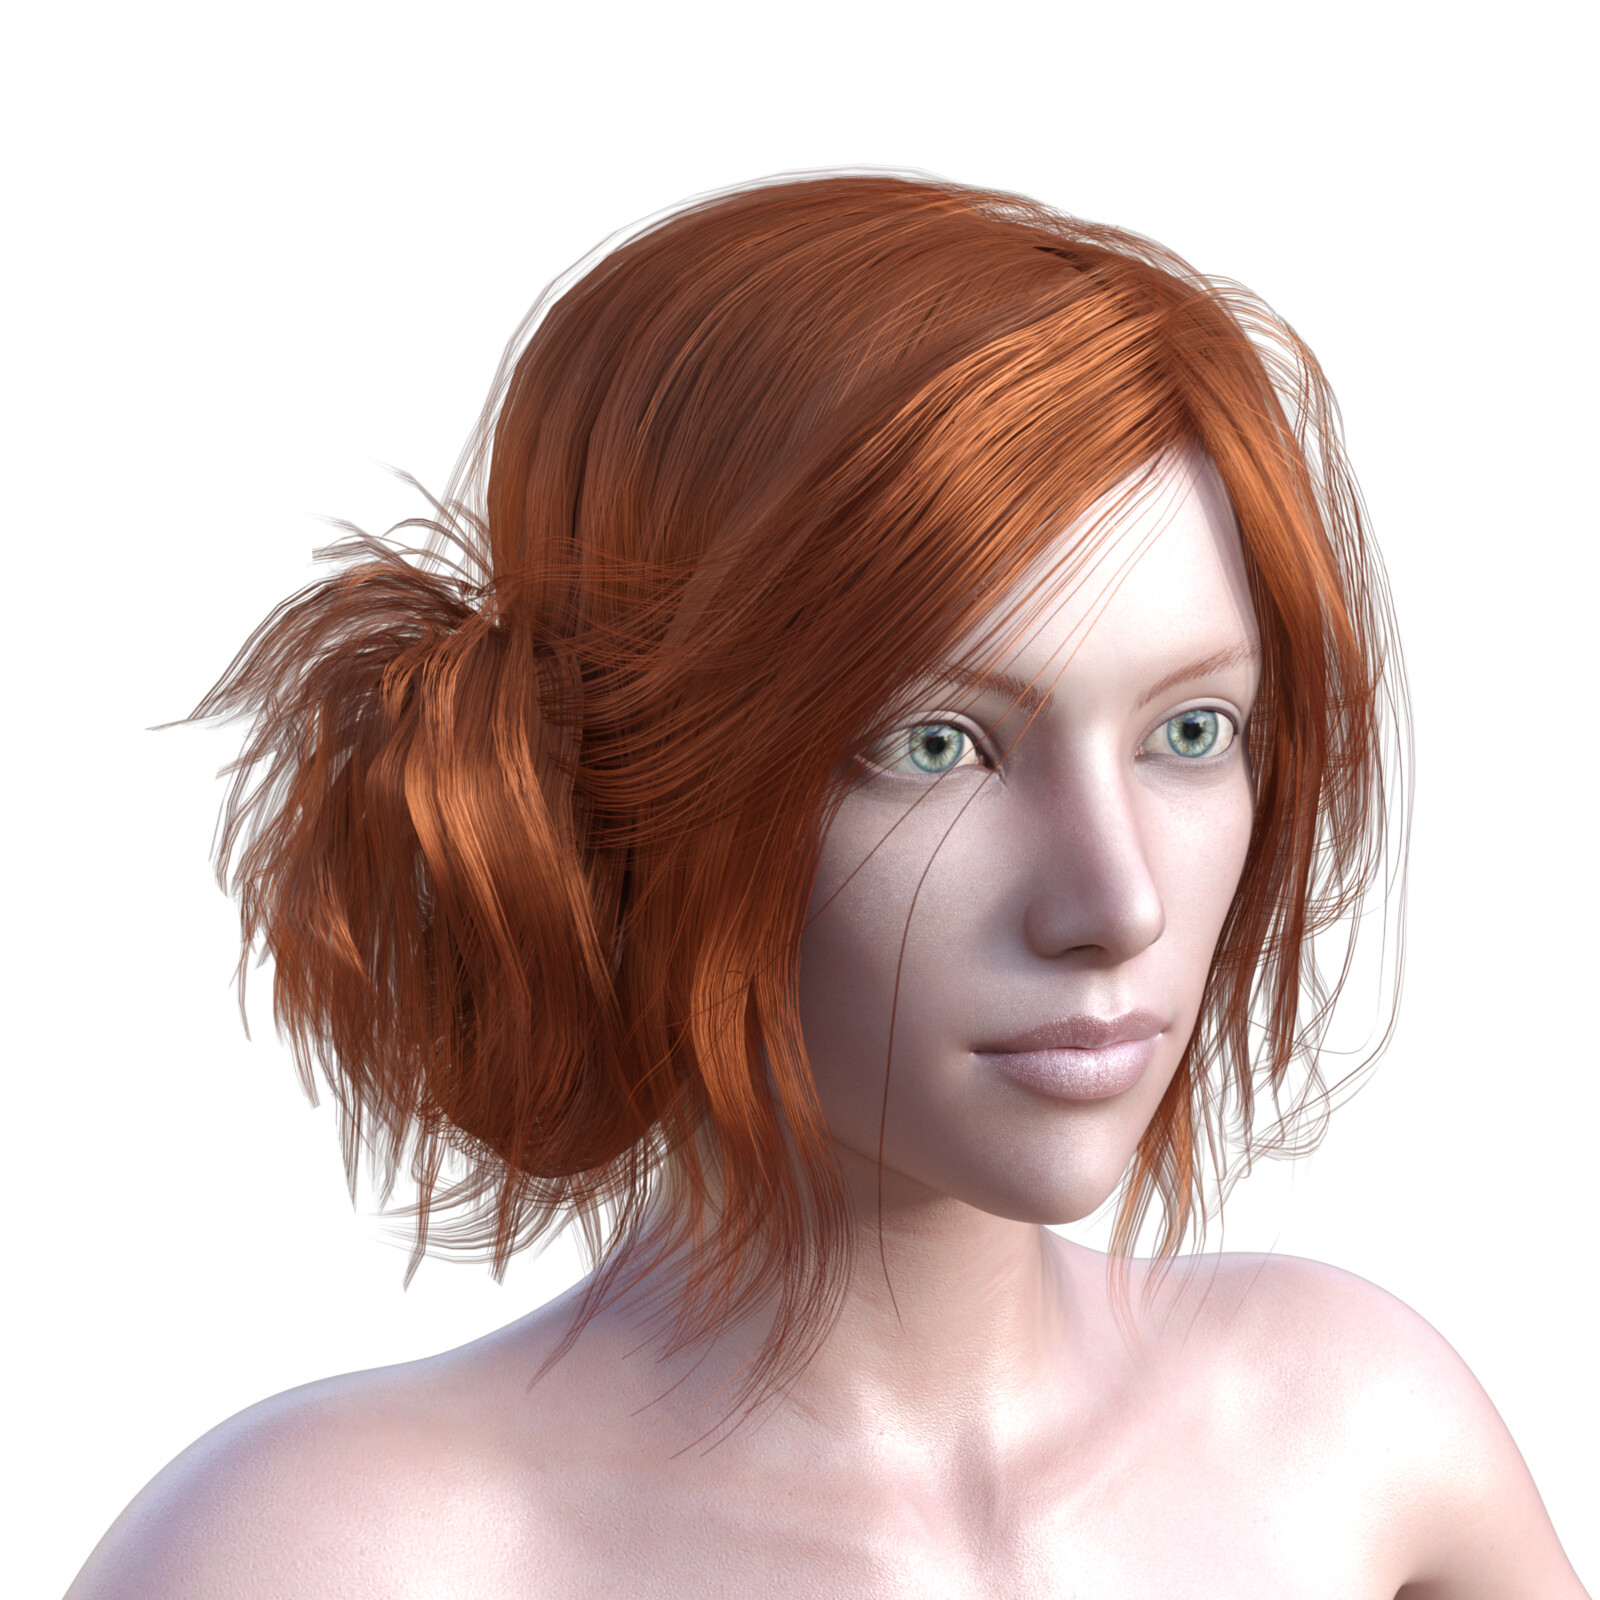 A test render of Avonlea character model using an older hair model